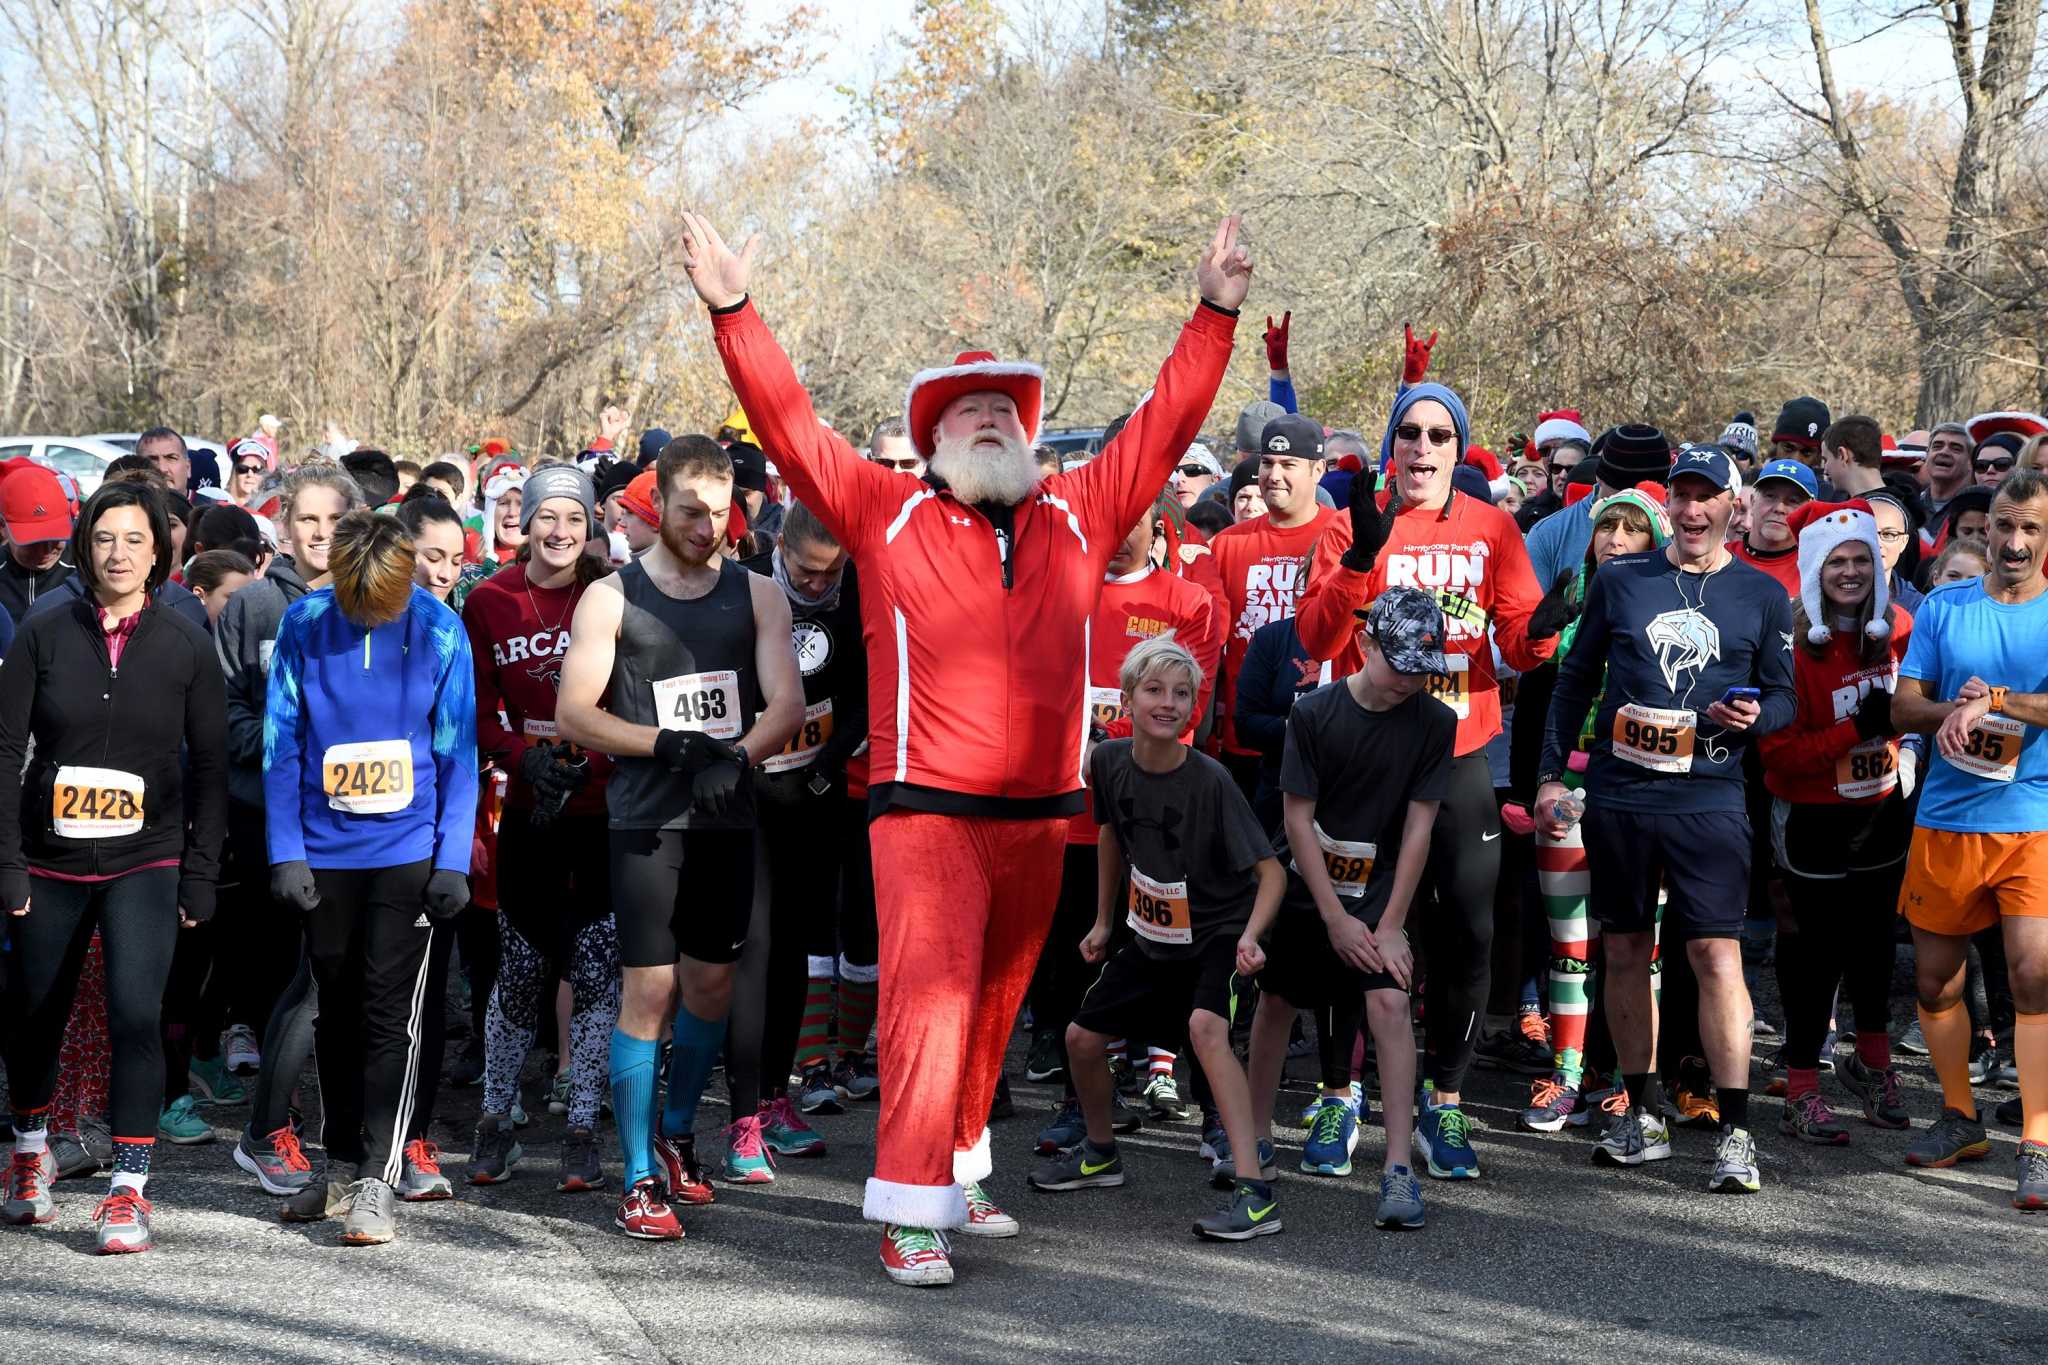 Sign up open for Run Santa Run